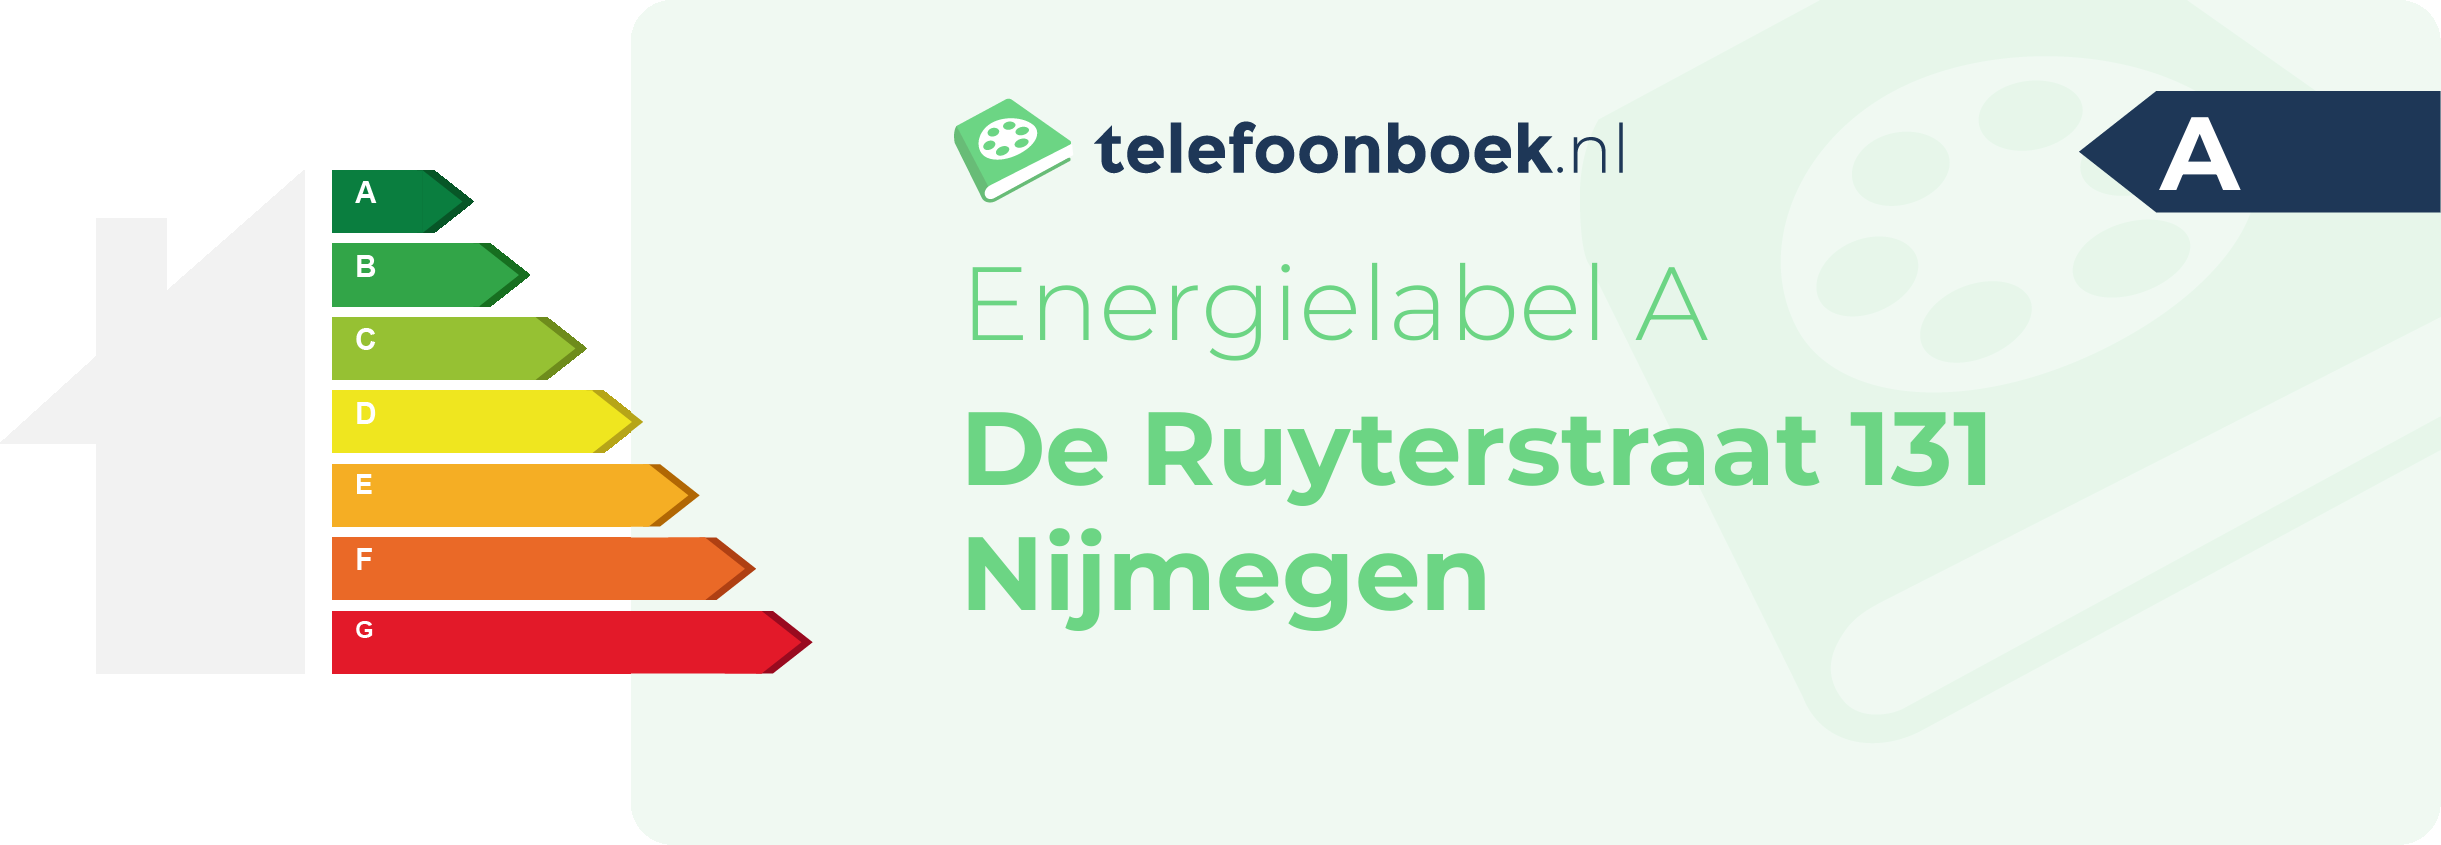 Energielabel De Ruyterstraat 131 Nijmegen